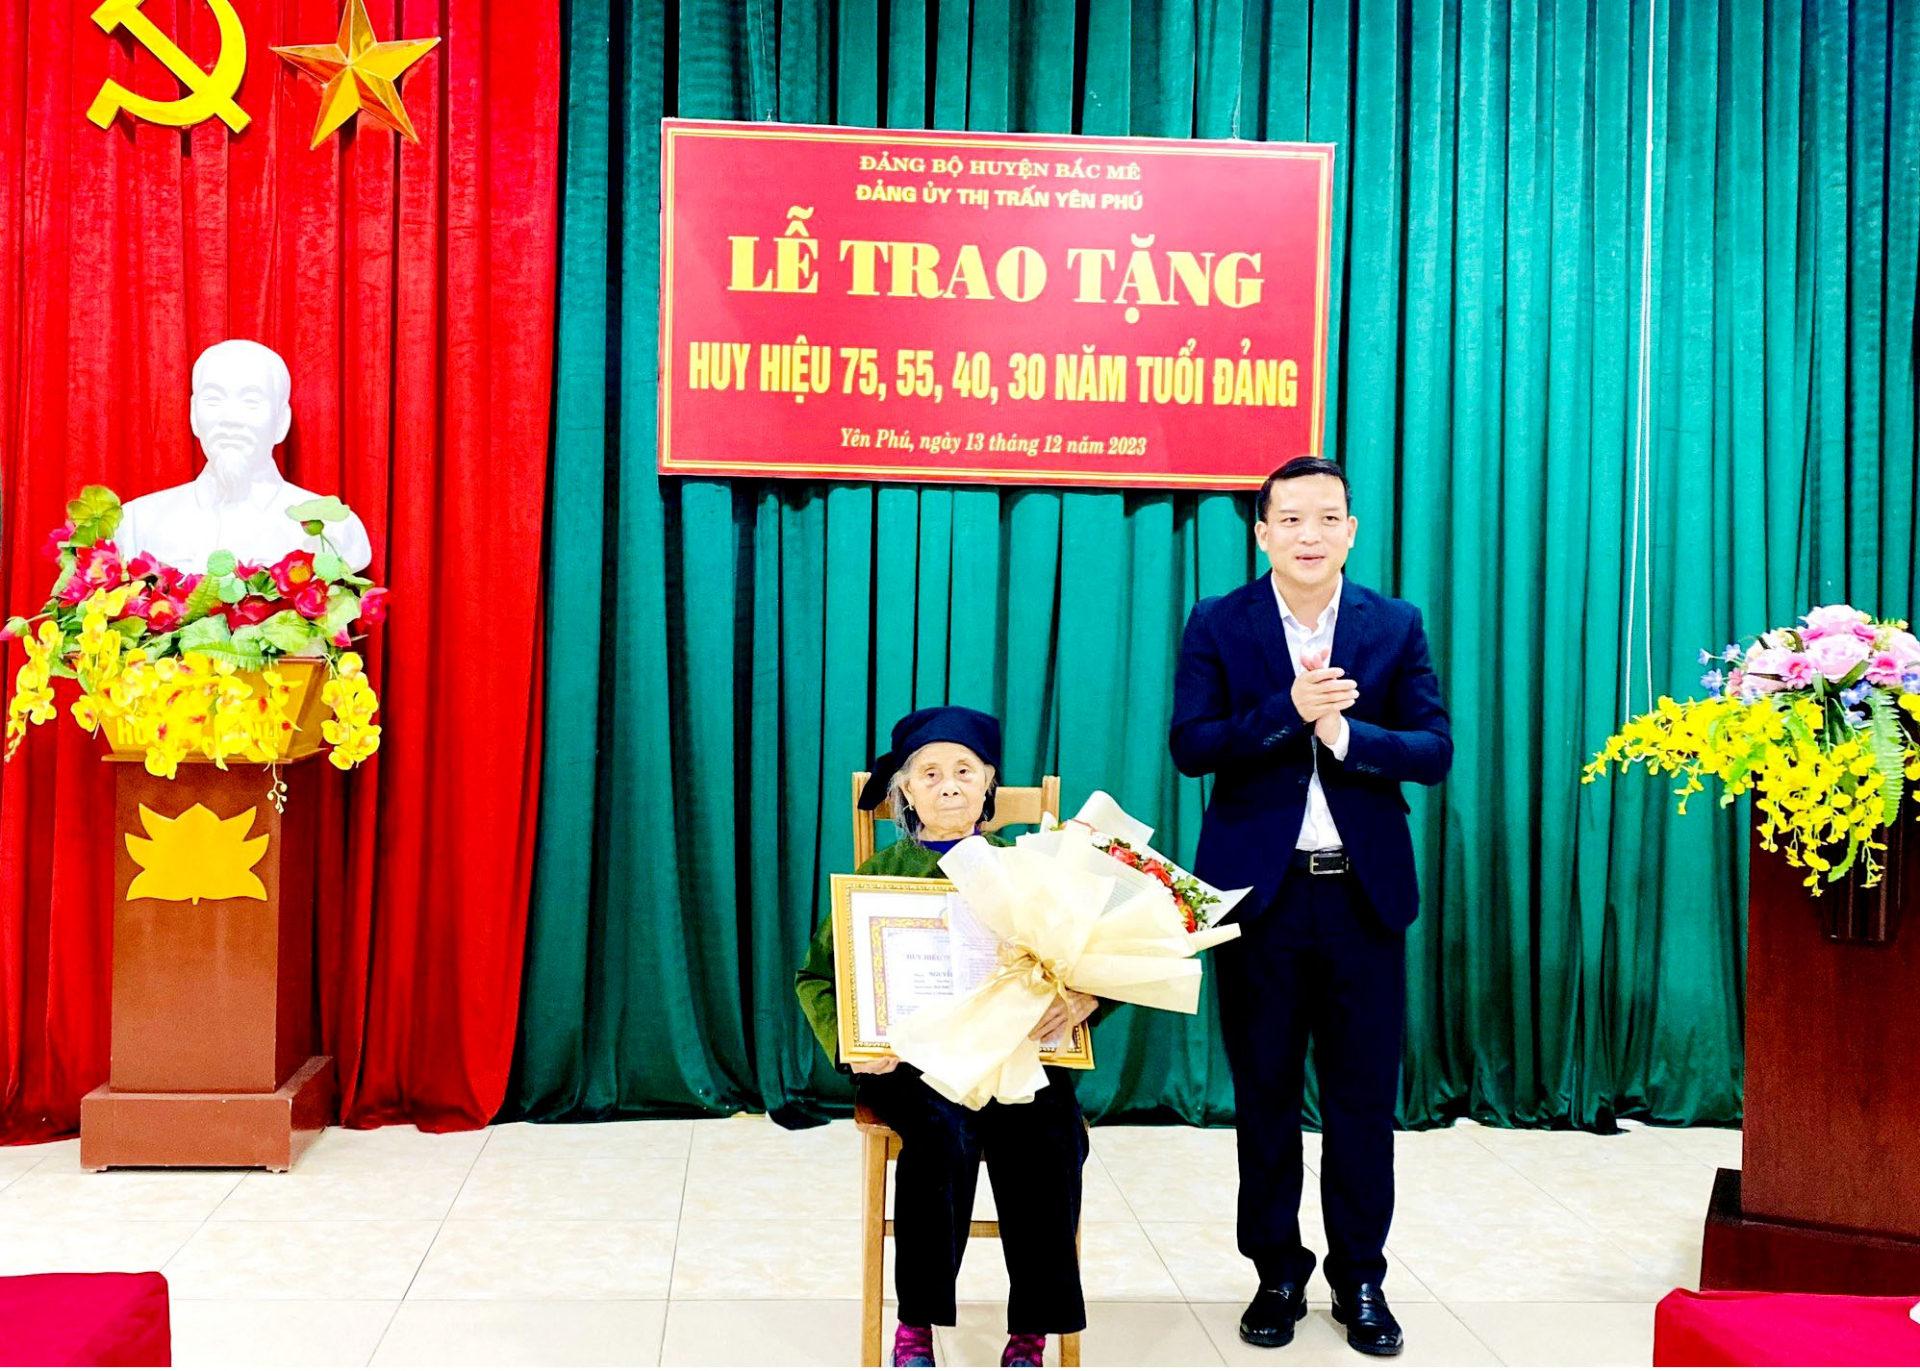 Đảng viên Nguyễn Thị Khuê, được nhận Huy hiệu 75 năm tuổi Đảng.